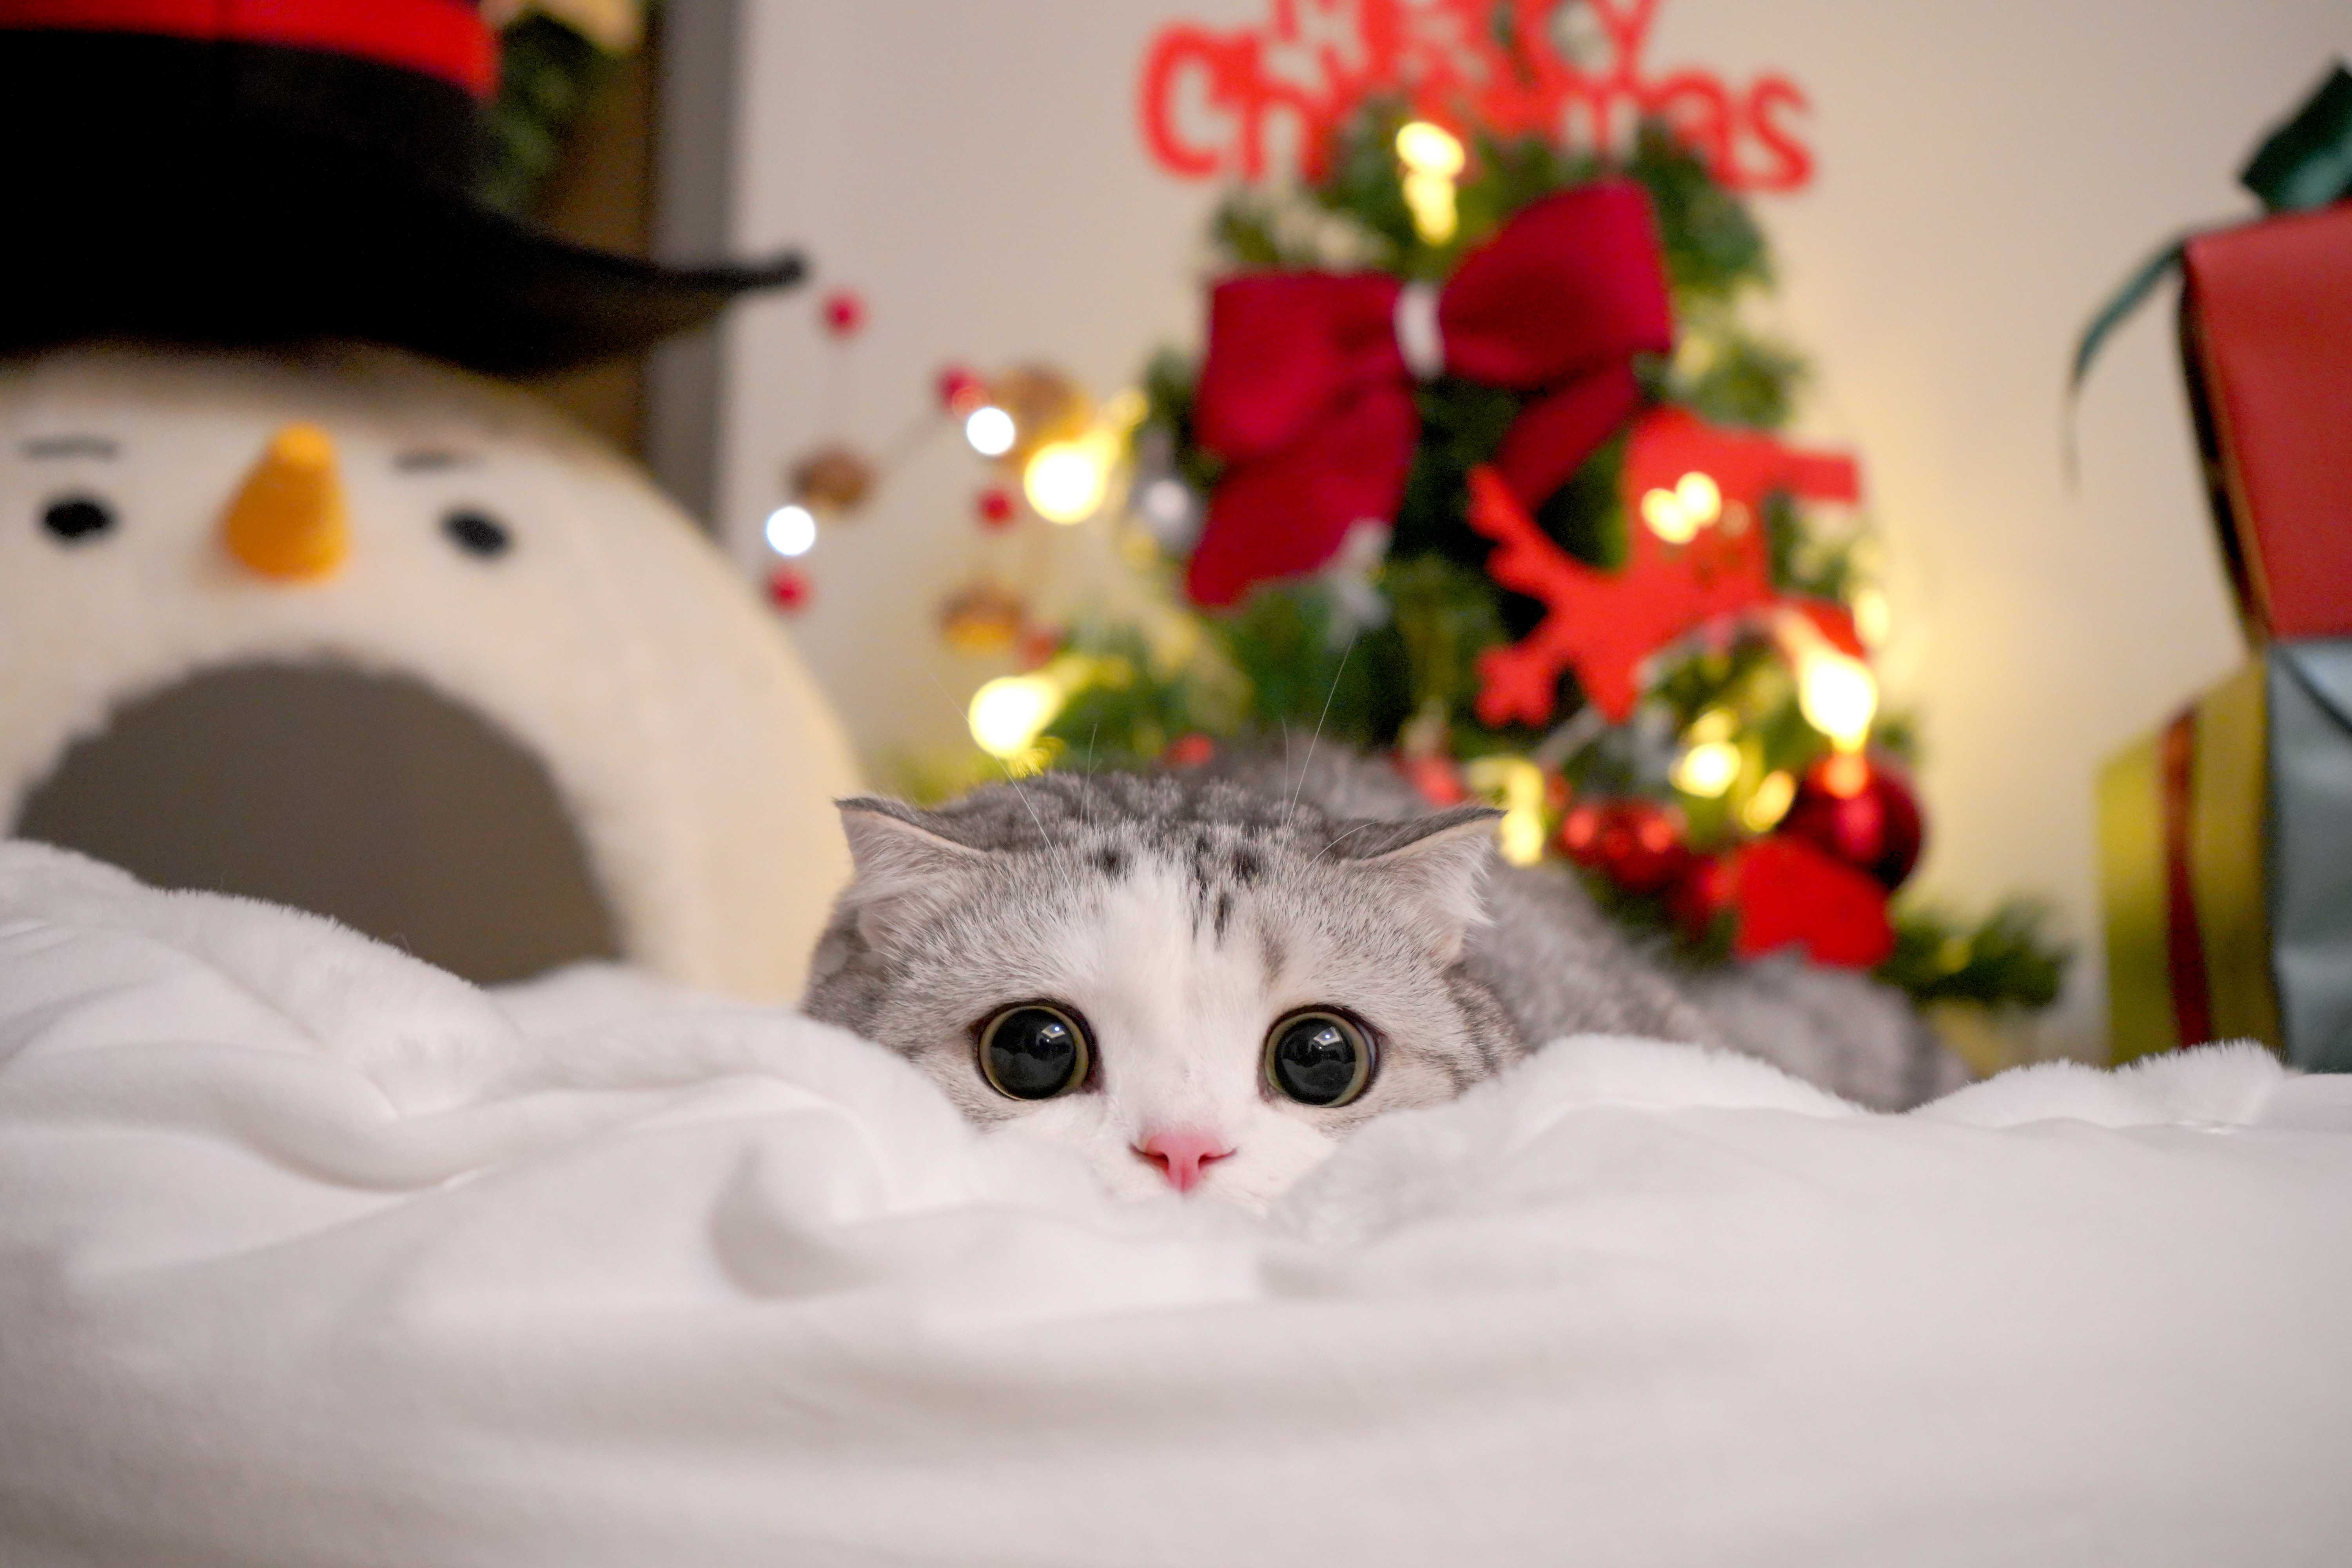 话说世界上有比小泡芙更可爱的猫猫嘛?